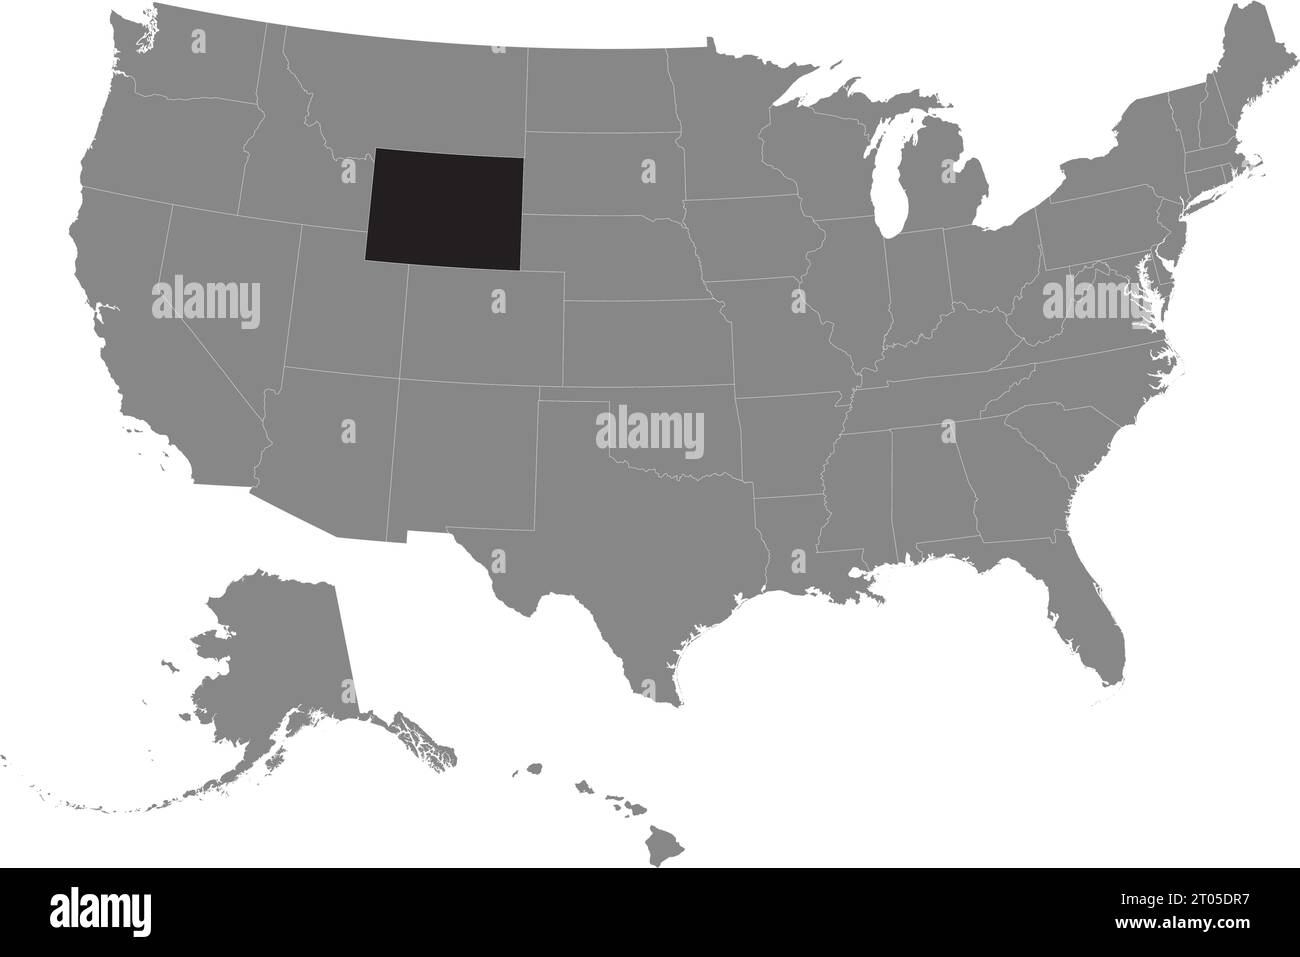 Schwarze CMYK-Bundeskarte von WYOMING in detaillierter grauer, leerer politischer Karte der Vereinigten Staaten von Amerika auf transparentem Hintergrund Stock Vektor